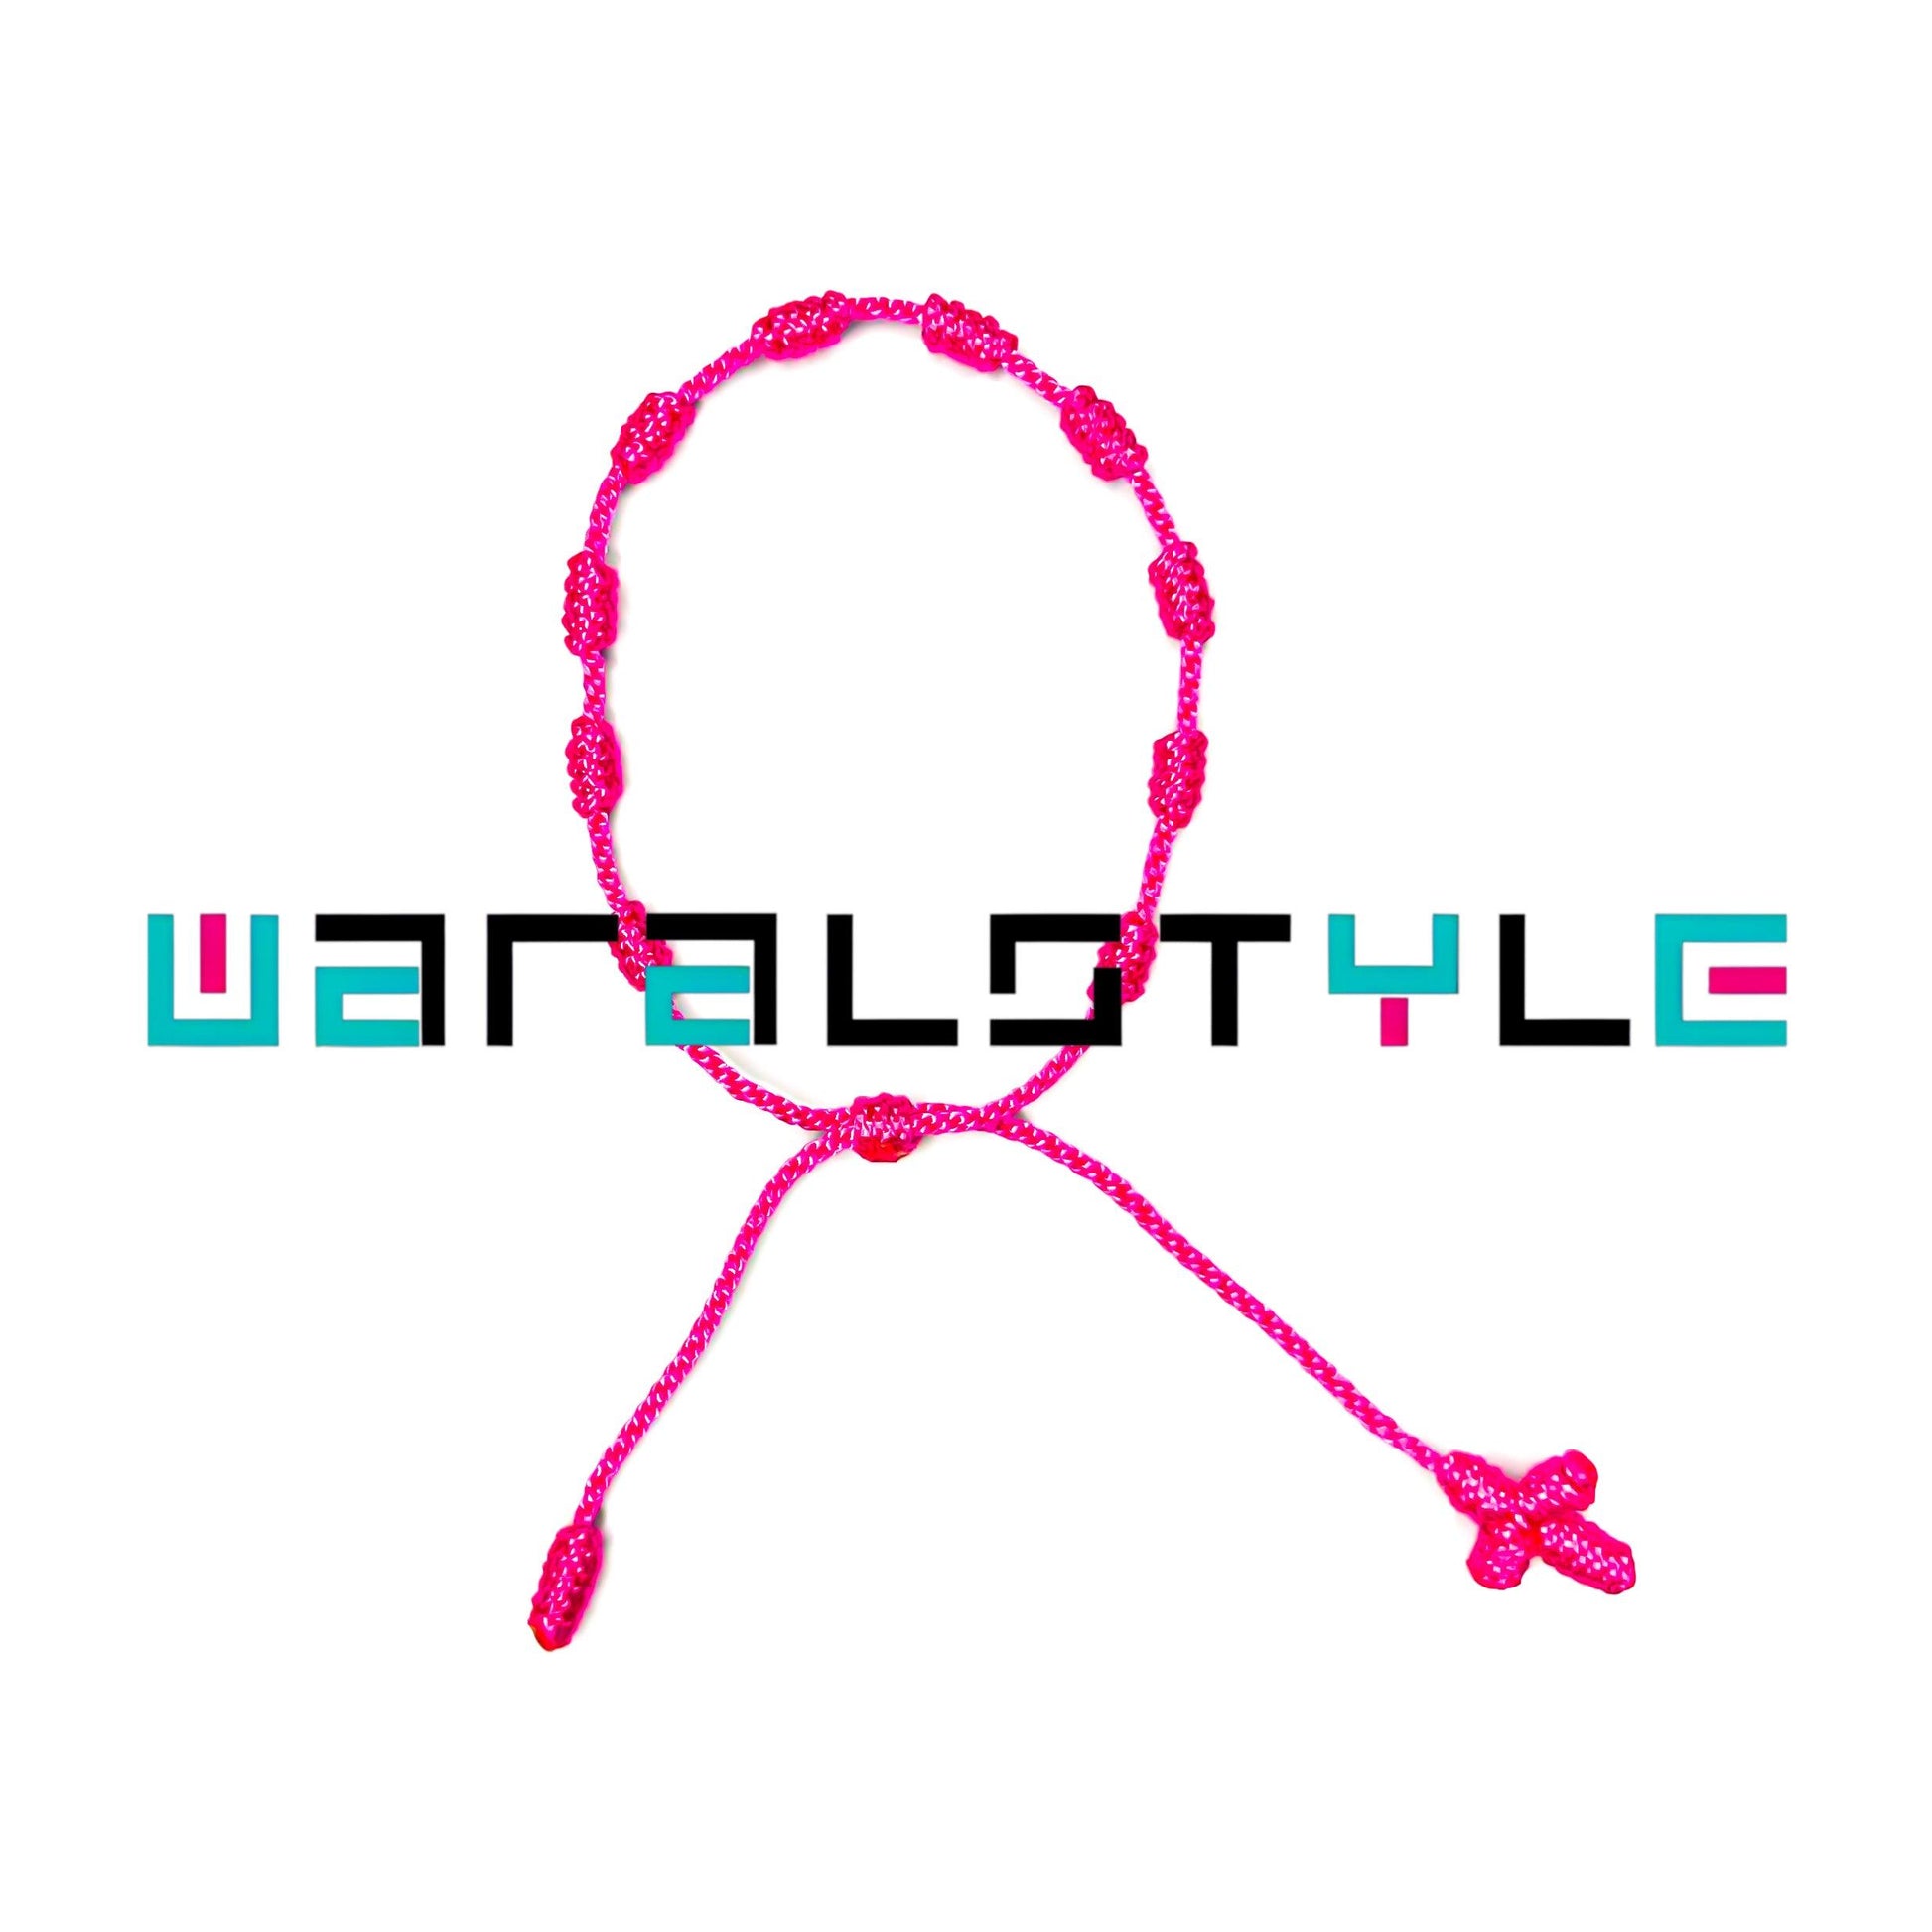 MARSHMALLOW - Waralstyle